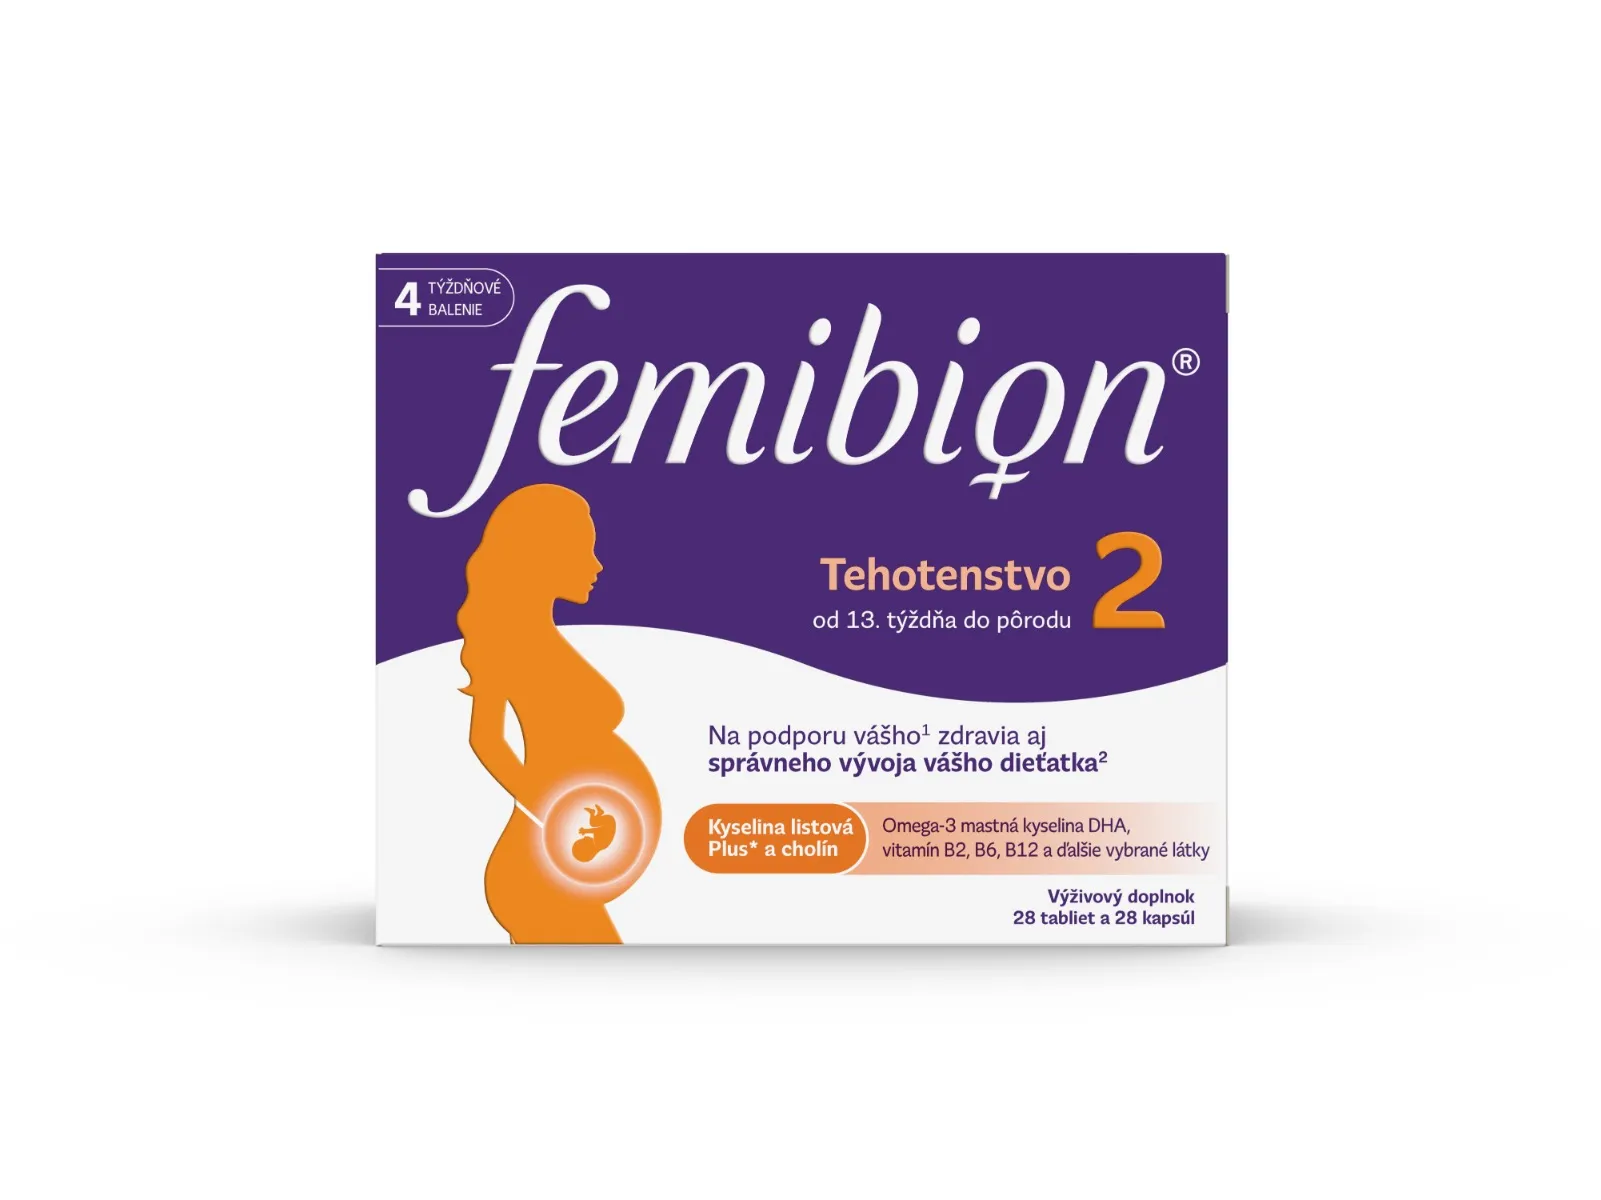 FEMIBION 2 Tehotenstvo, 28 tbl + 28 cps 1×28 tbl + 28 cps, výživový doplnok